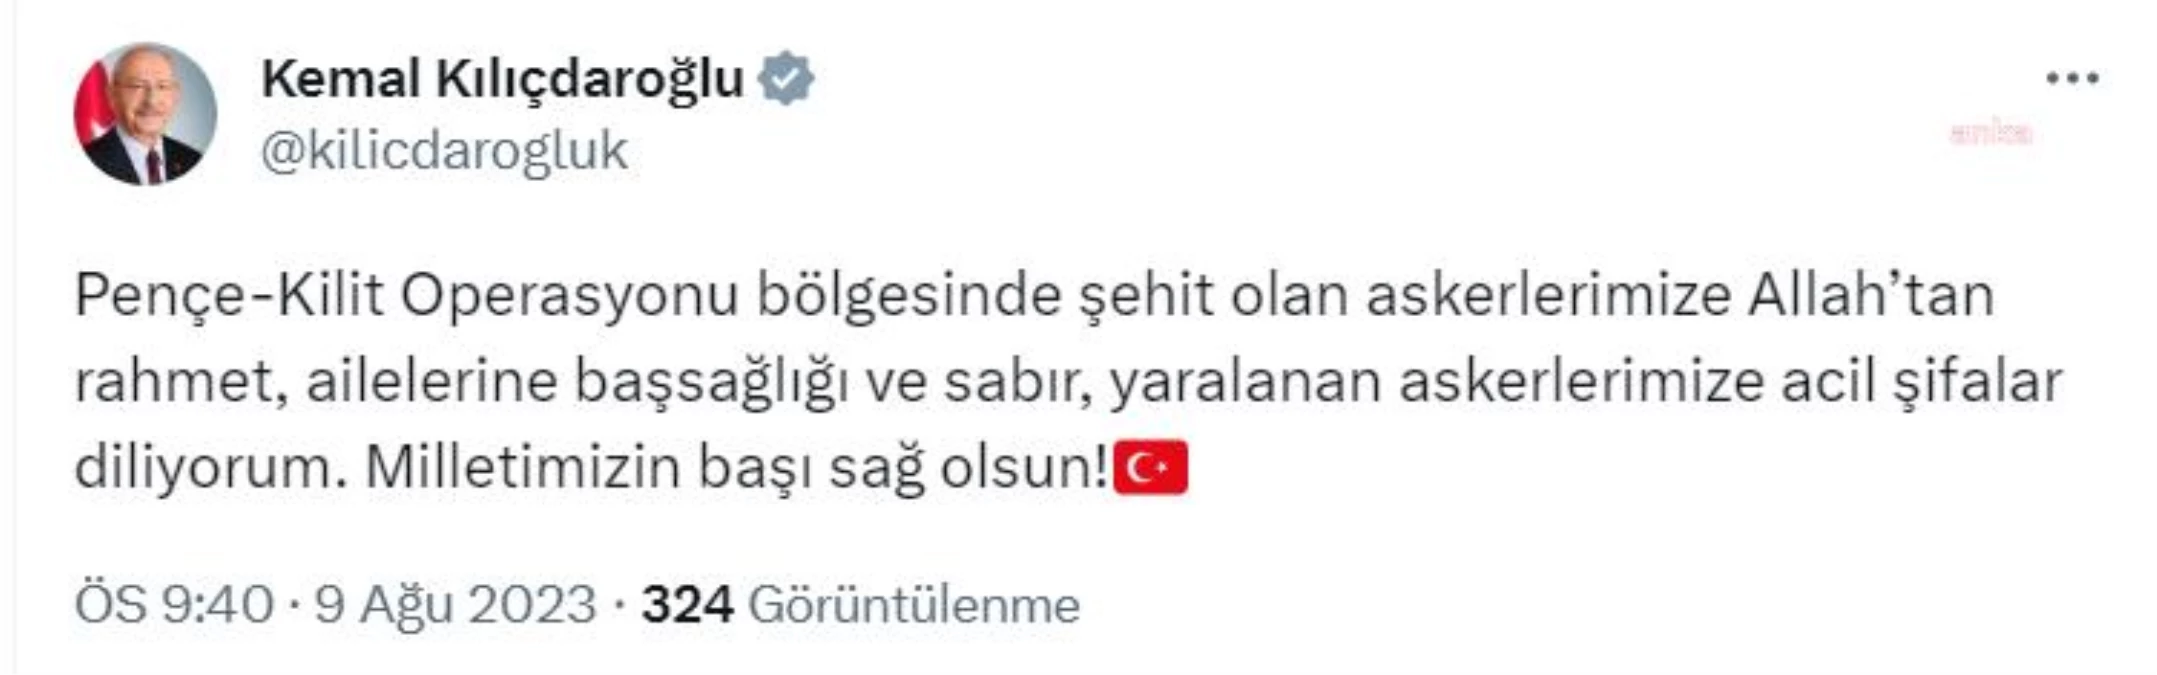 Kılıçdaroğlu, Pençe-Kilit Operasyonu\'nda şehit olan askerler için taziye mesajı yayınladı